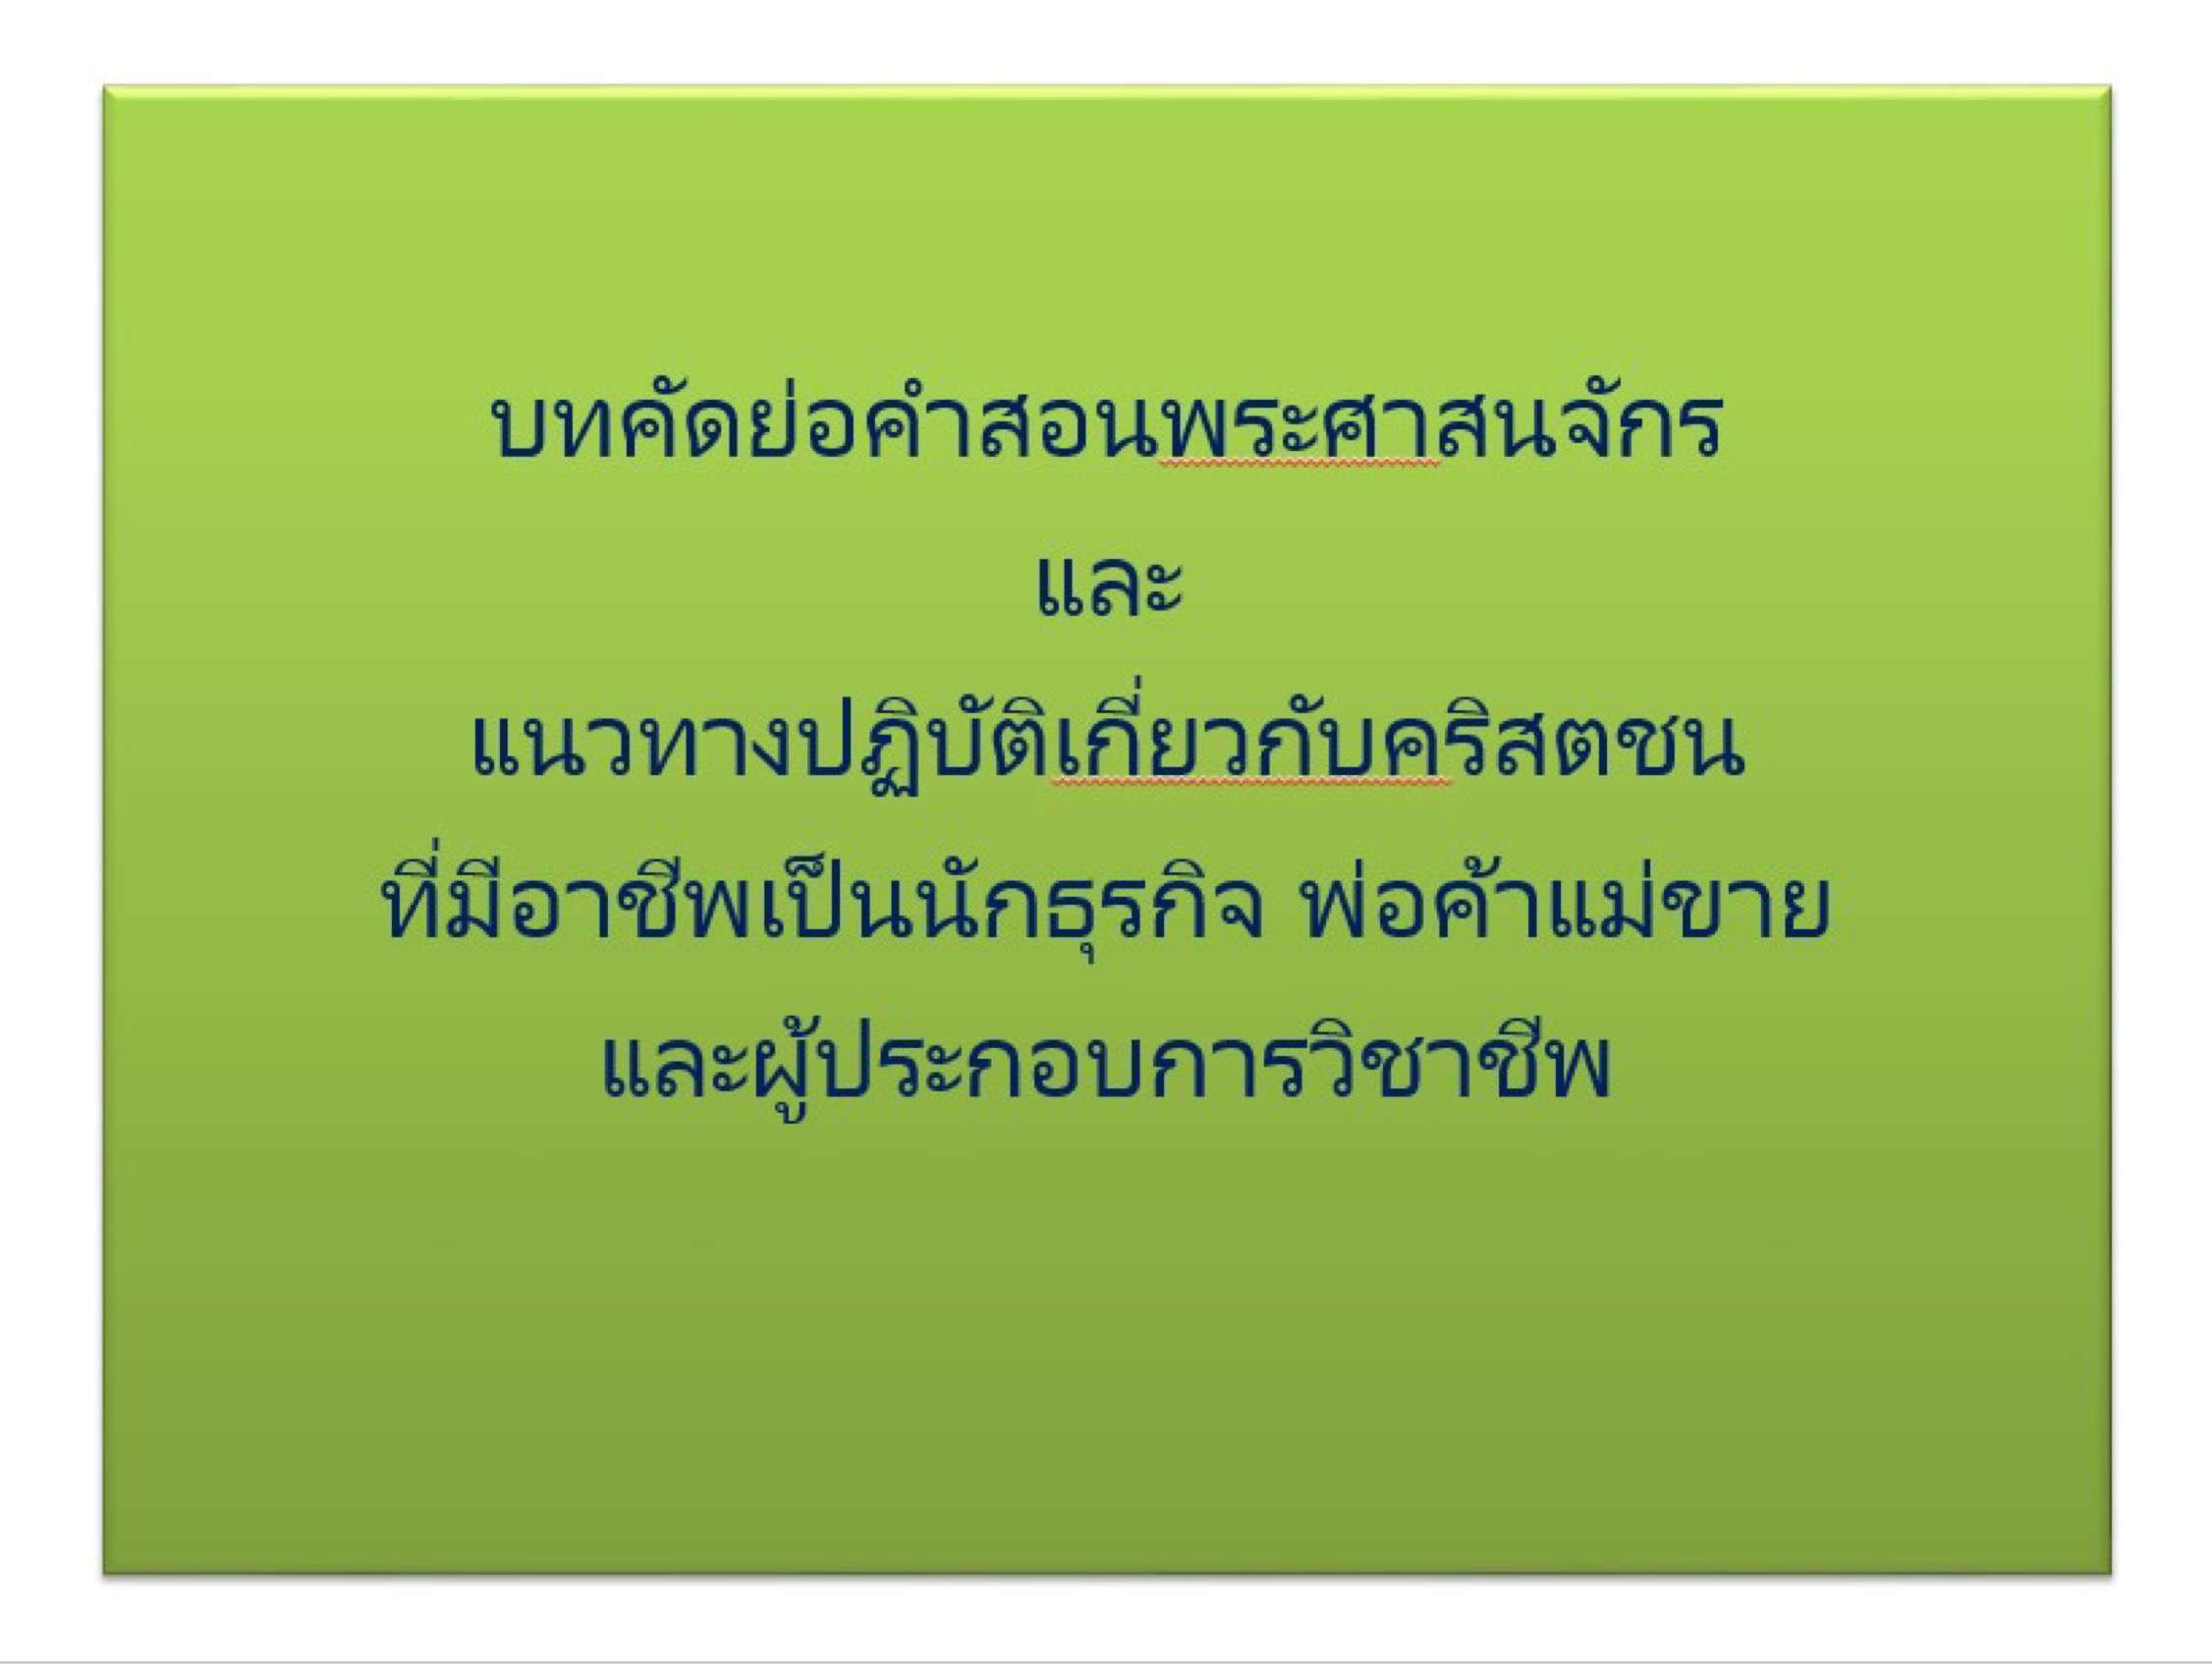 Vocation of Business Leader (ฉบับภาษาไทย)